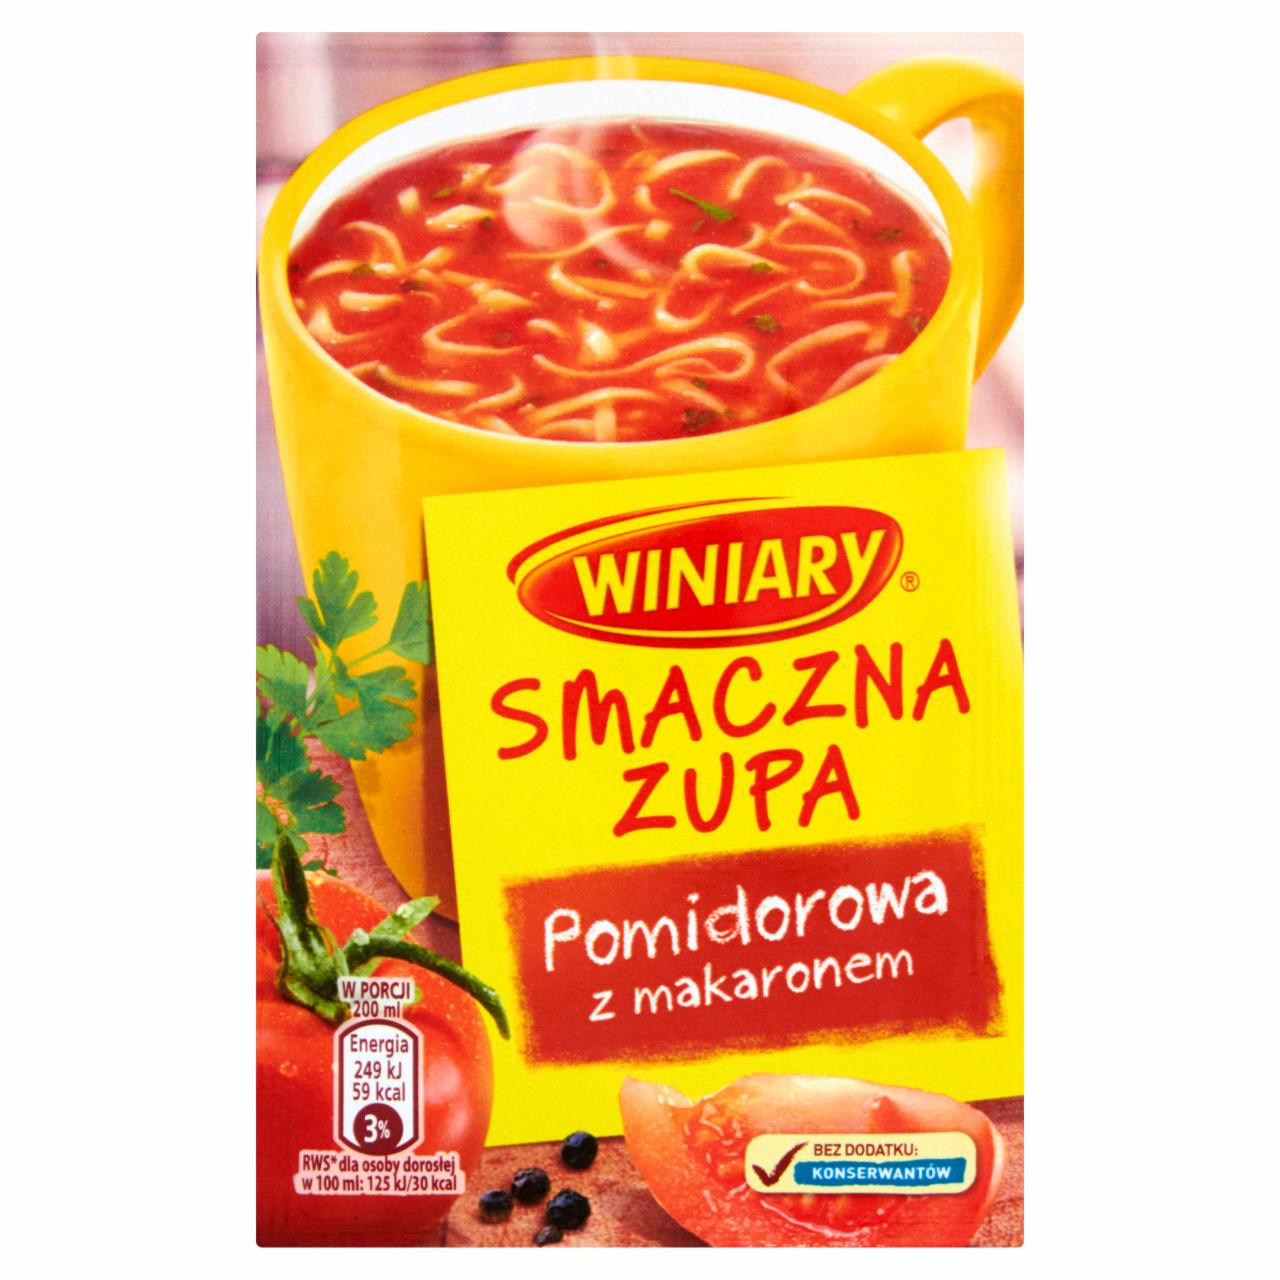 Zdjęcia - Winiary Smaczna zupa Pomidorowa z makaronem 16 g